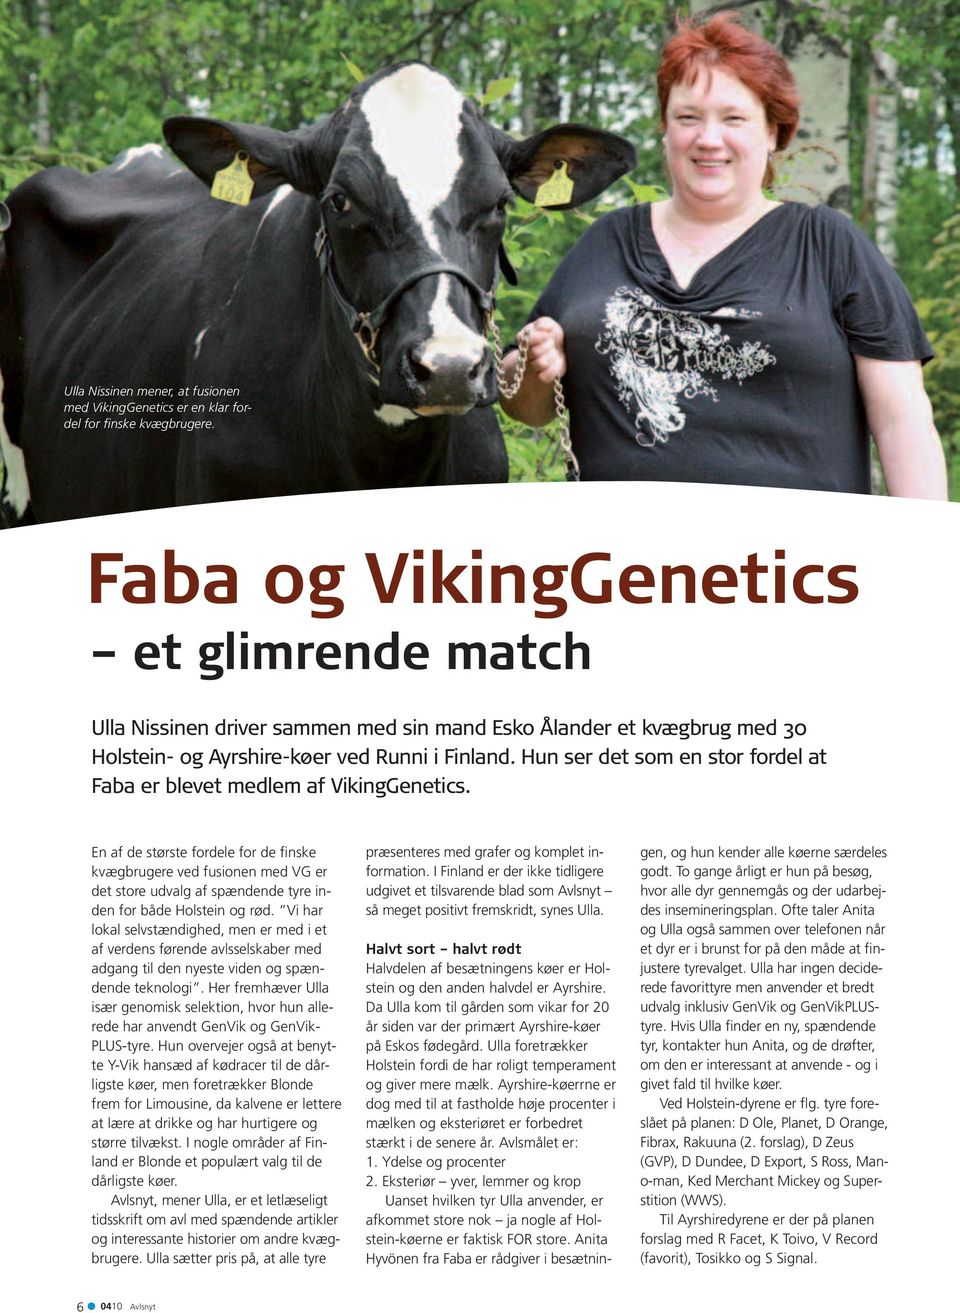 Hun ser det som en stor fordel at Faba er blevet medlem af VikingGenetics.